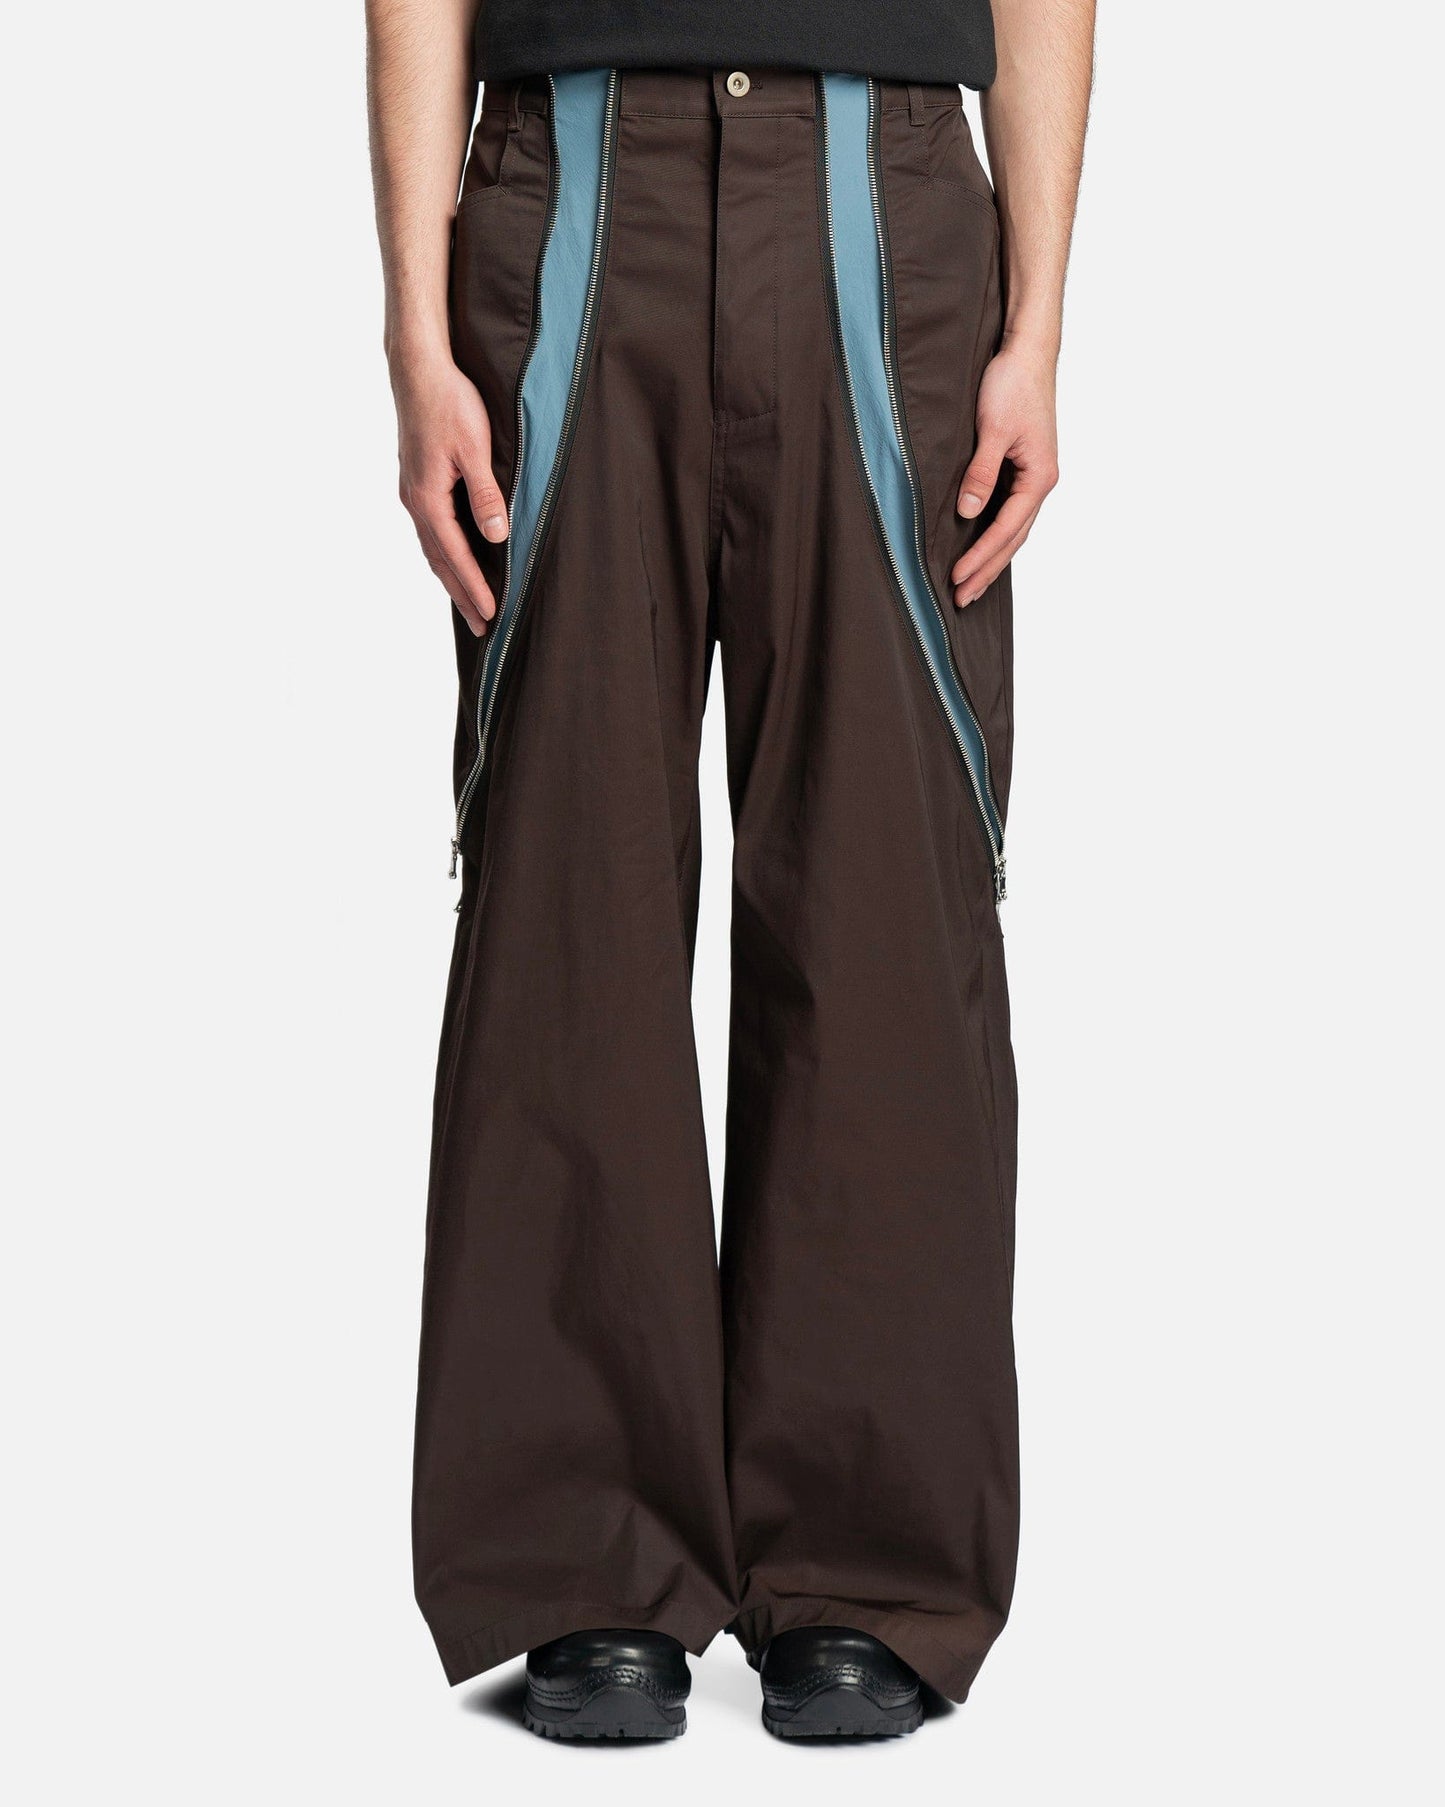 FFFPOSTALSERVICE Men's Pants 3-Way Zip Trouser in Brown/Blue